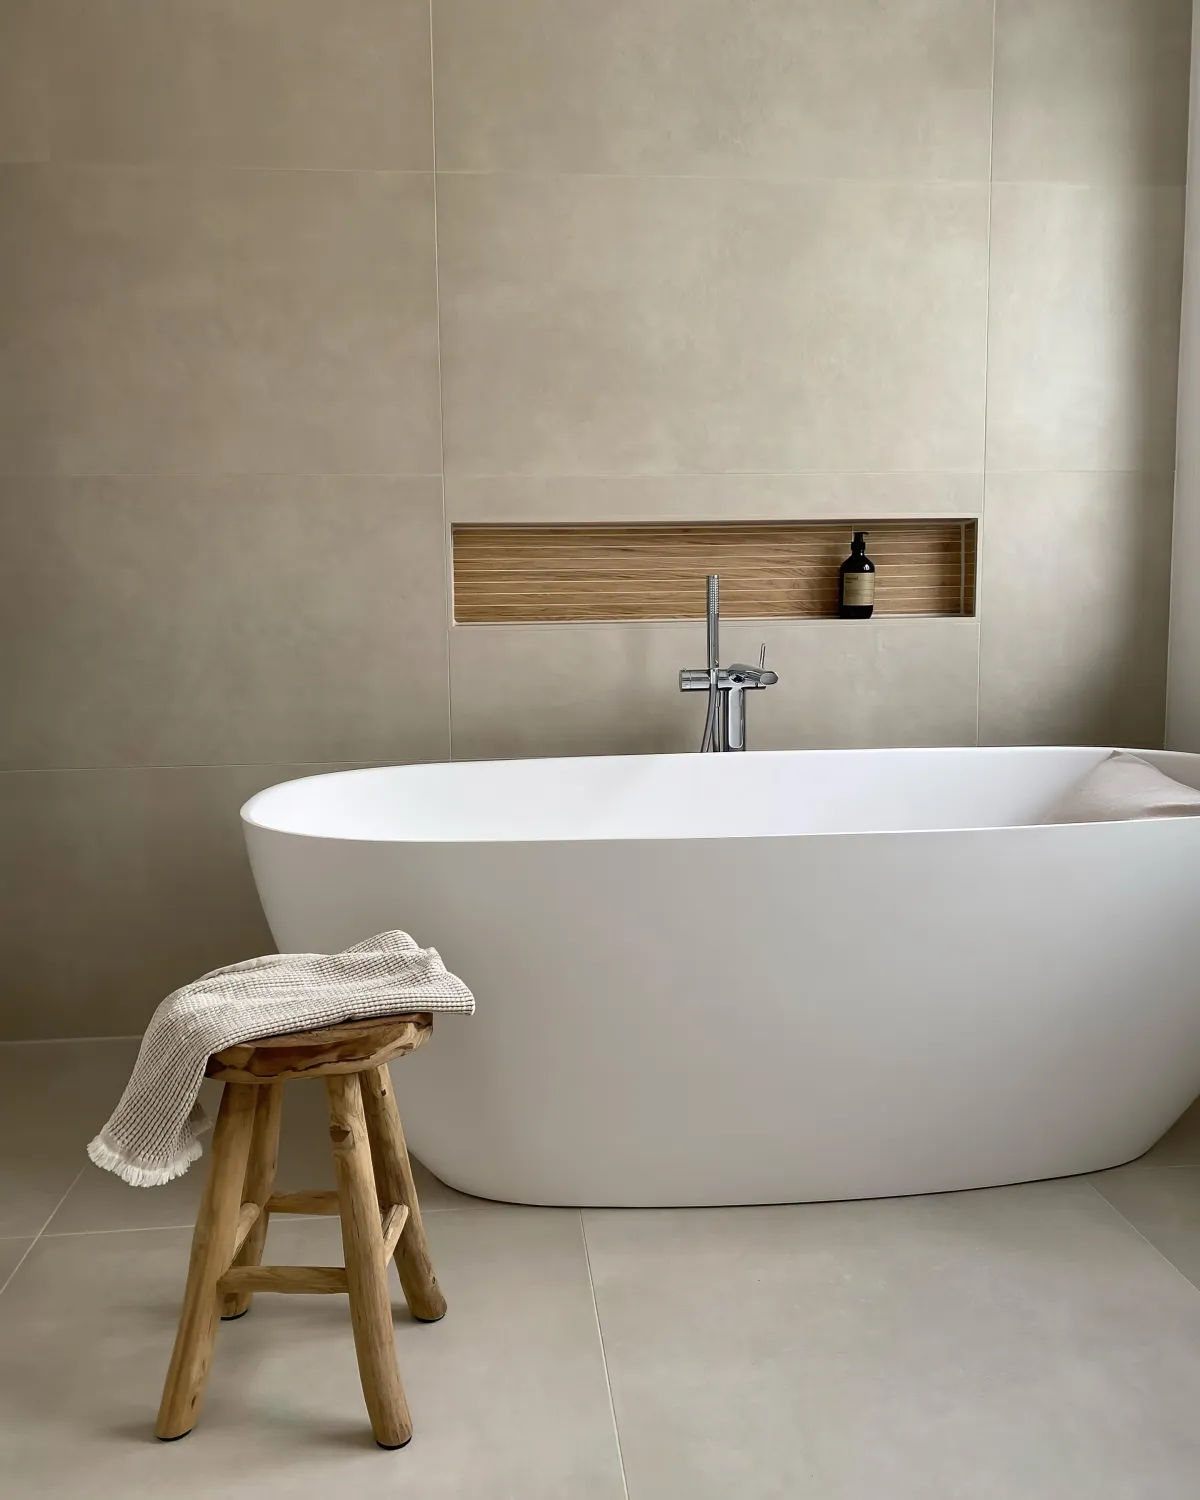 design minimaliste salle d eau baignoire blanche tabouret en bois